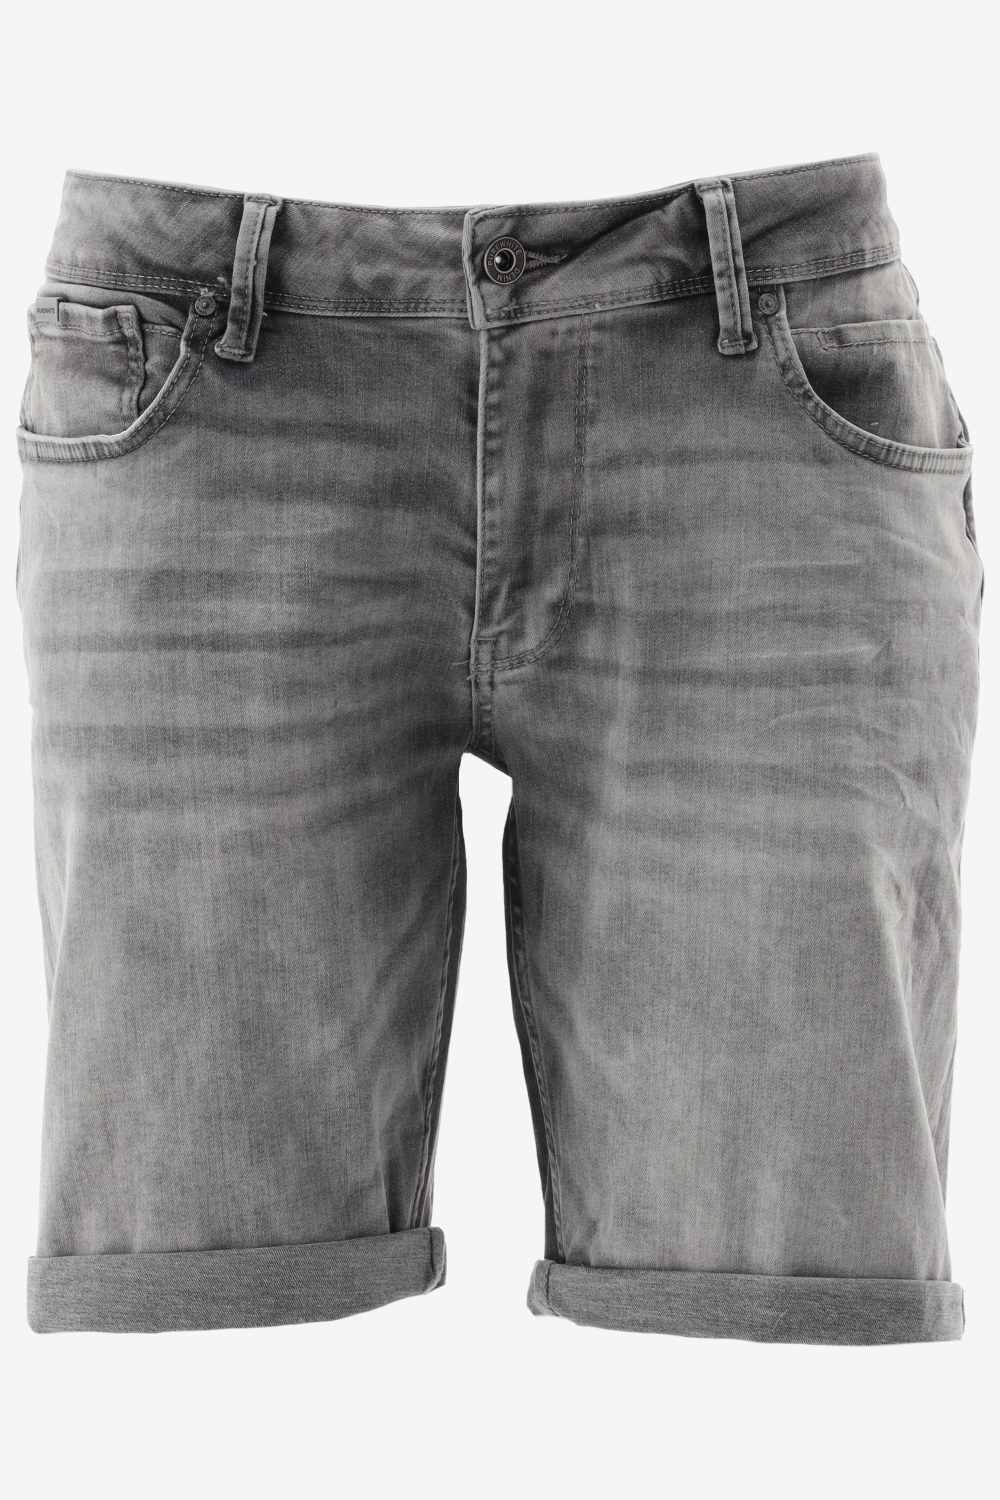 Purewhite - Heren Skinny fit Denim Shorts - Denim Mid Grey - Maat 27